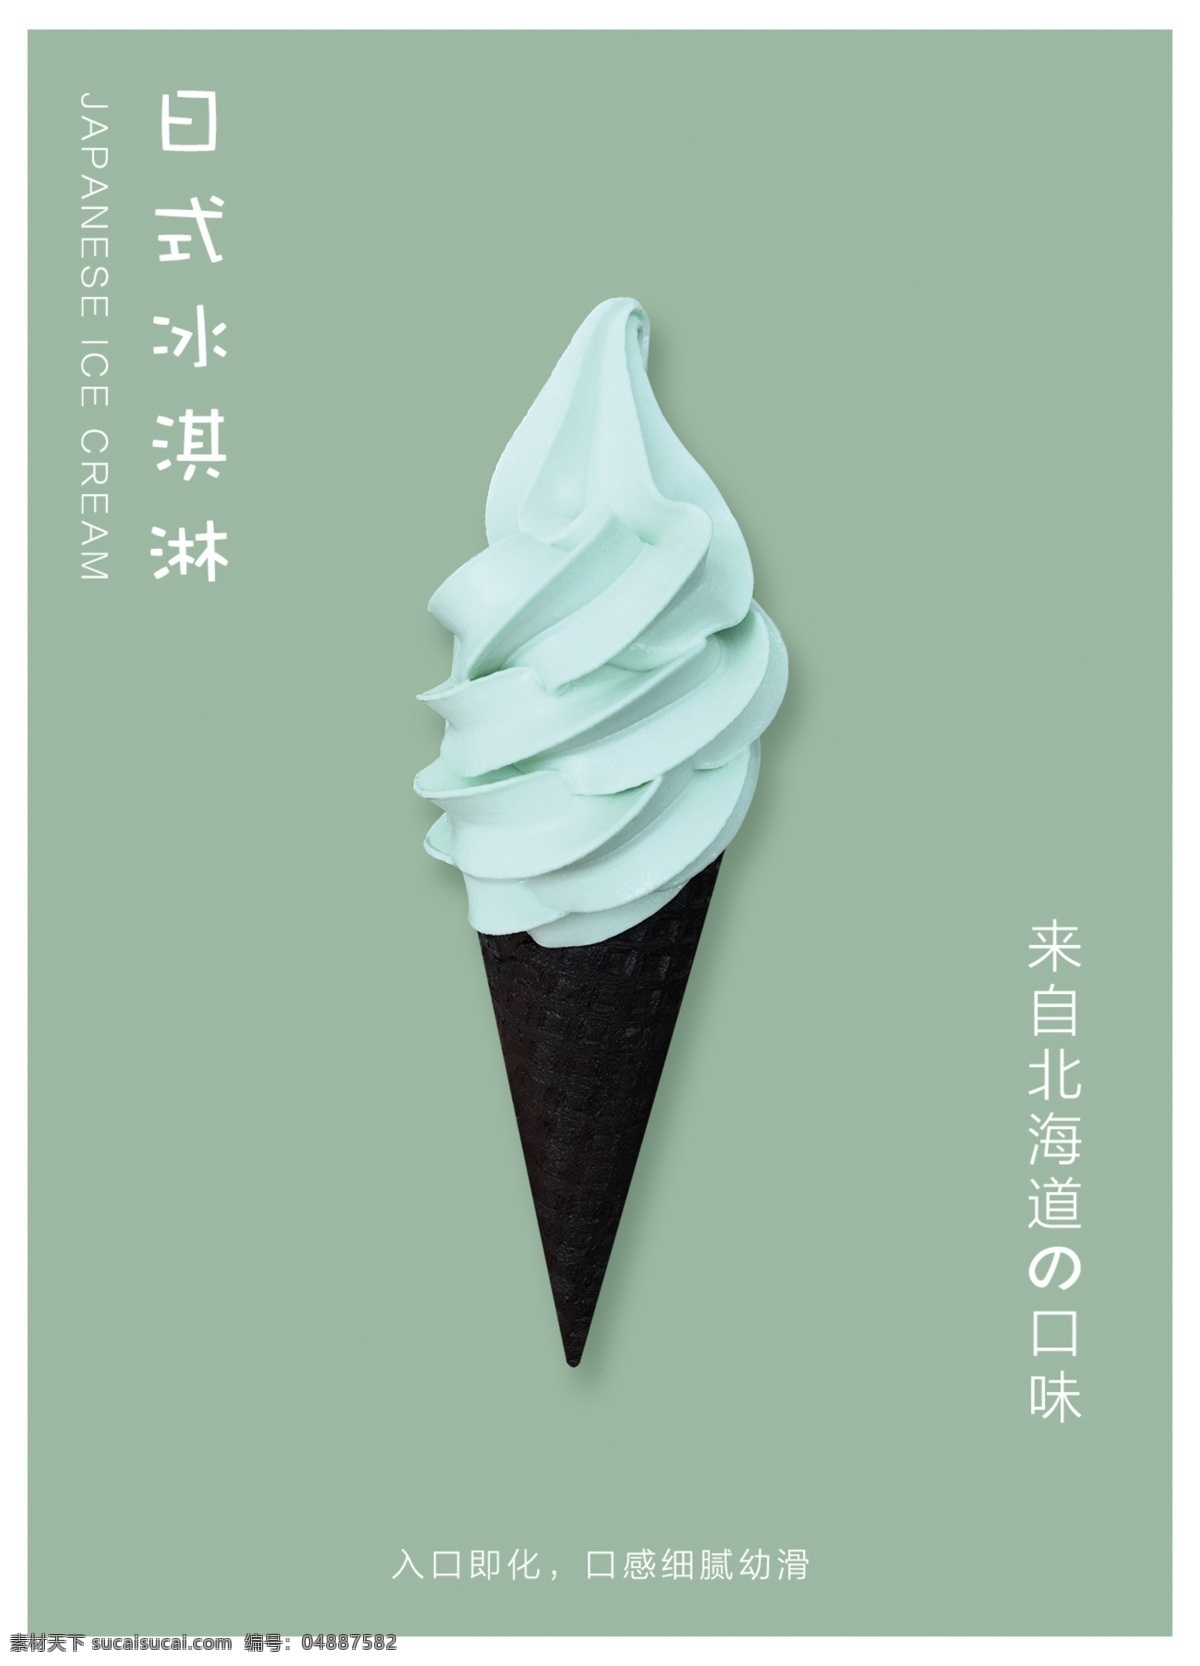 绿色 日式 小 清新 夏日 冰淇淋 美食 产品 日式小清新 绿色海报 夏日风格 美食产品 简约大气